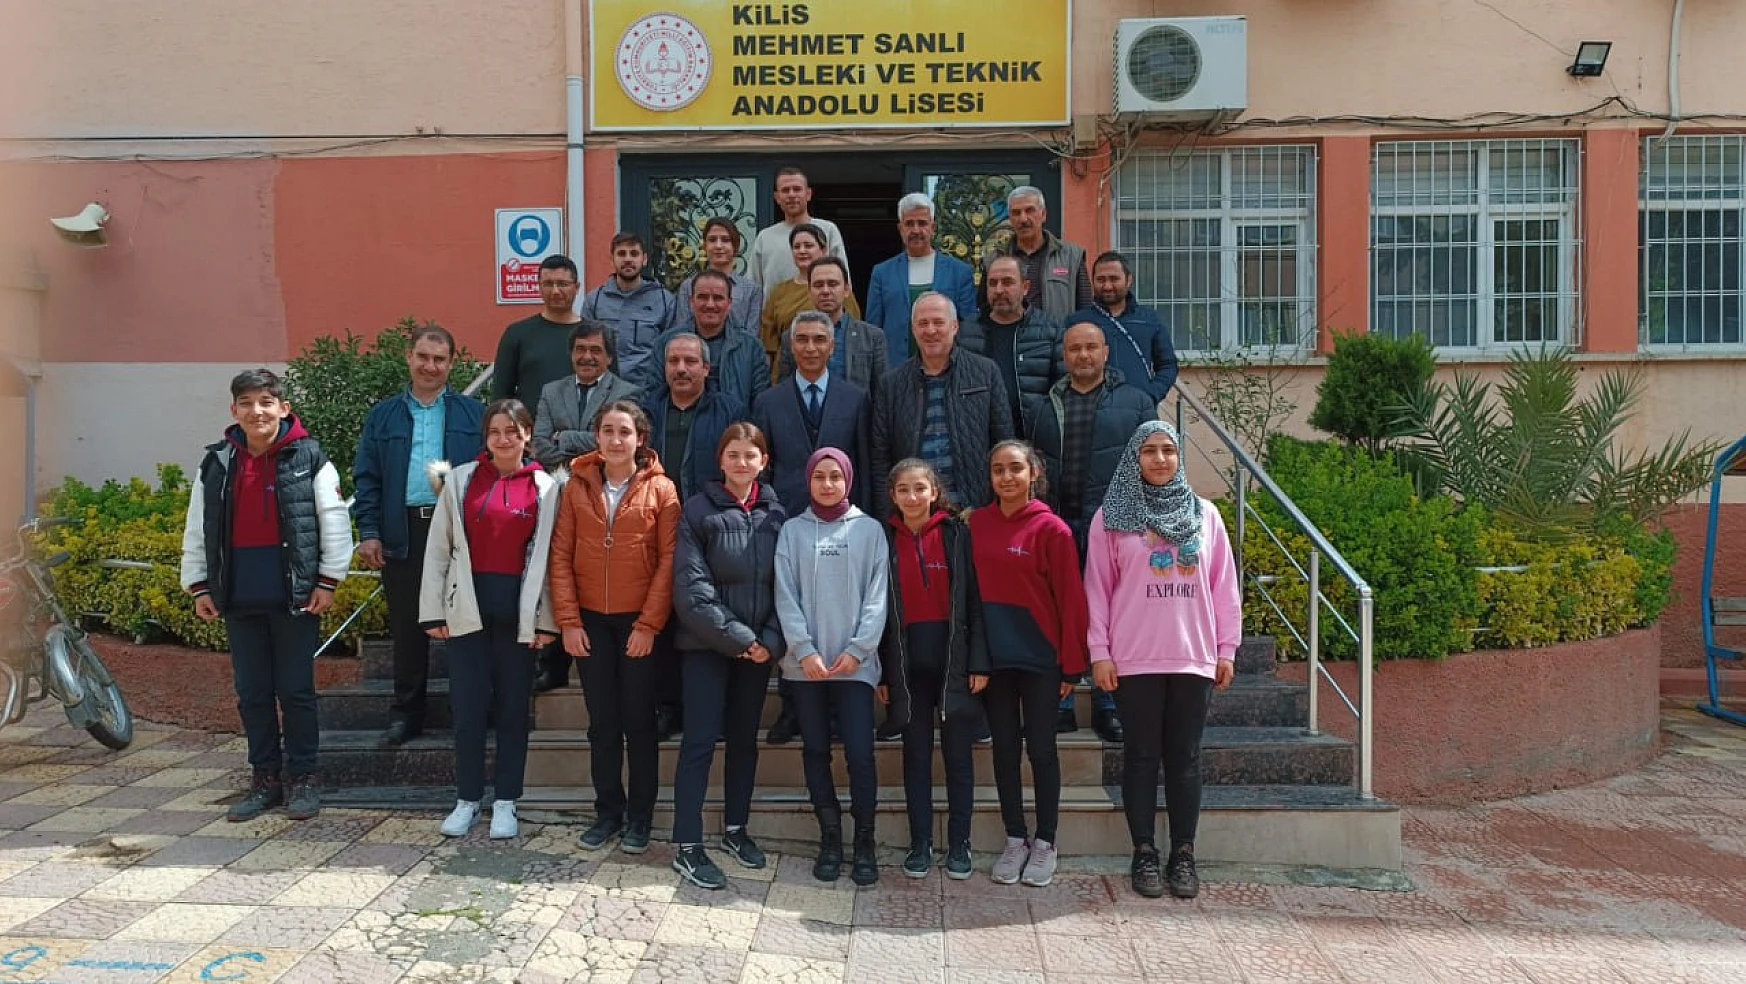 Karaman'daki okullar Kilis'teki okullarla kardeş oldu